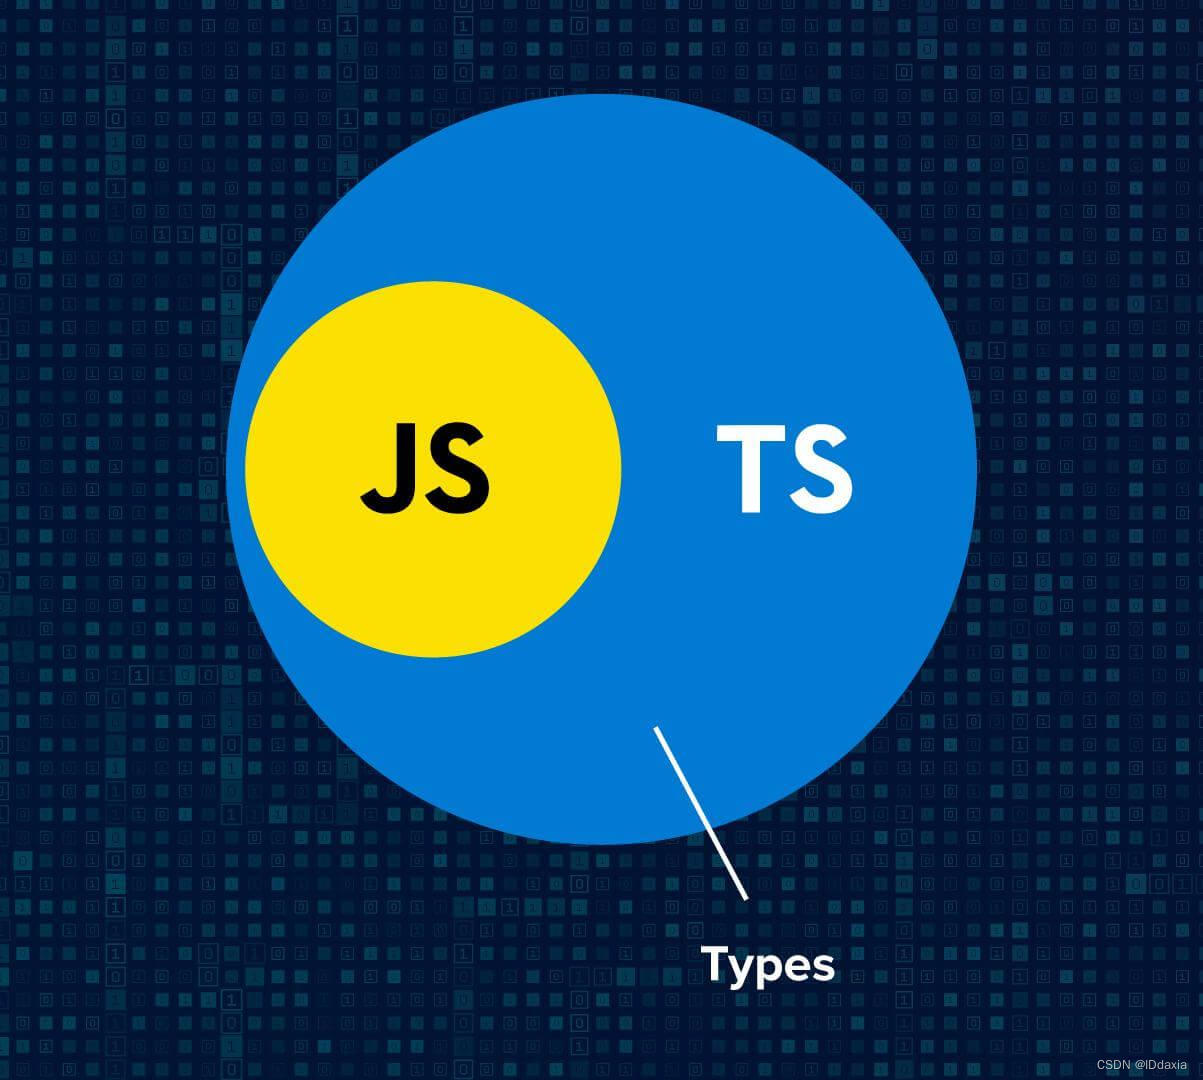 C++与Typescript的区别